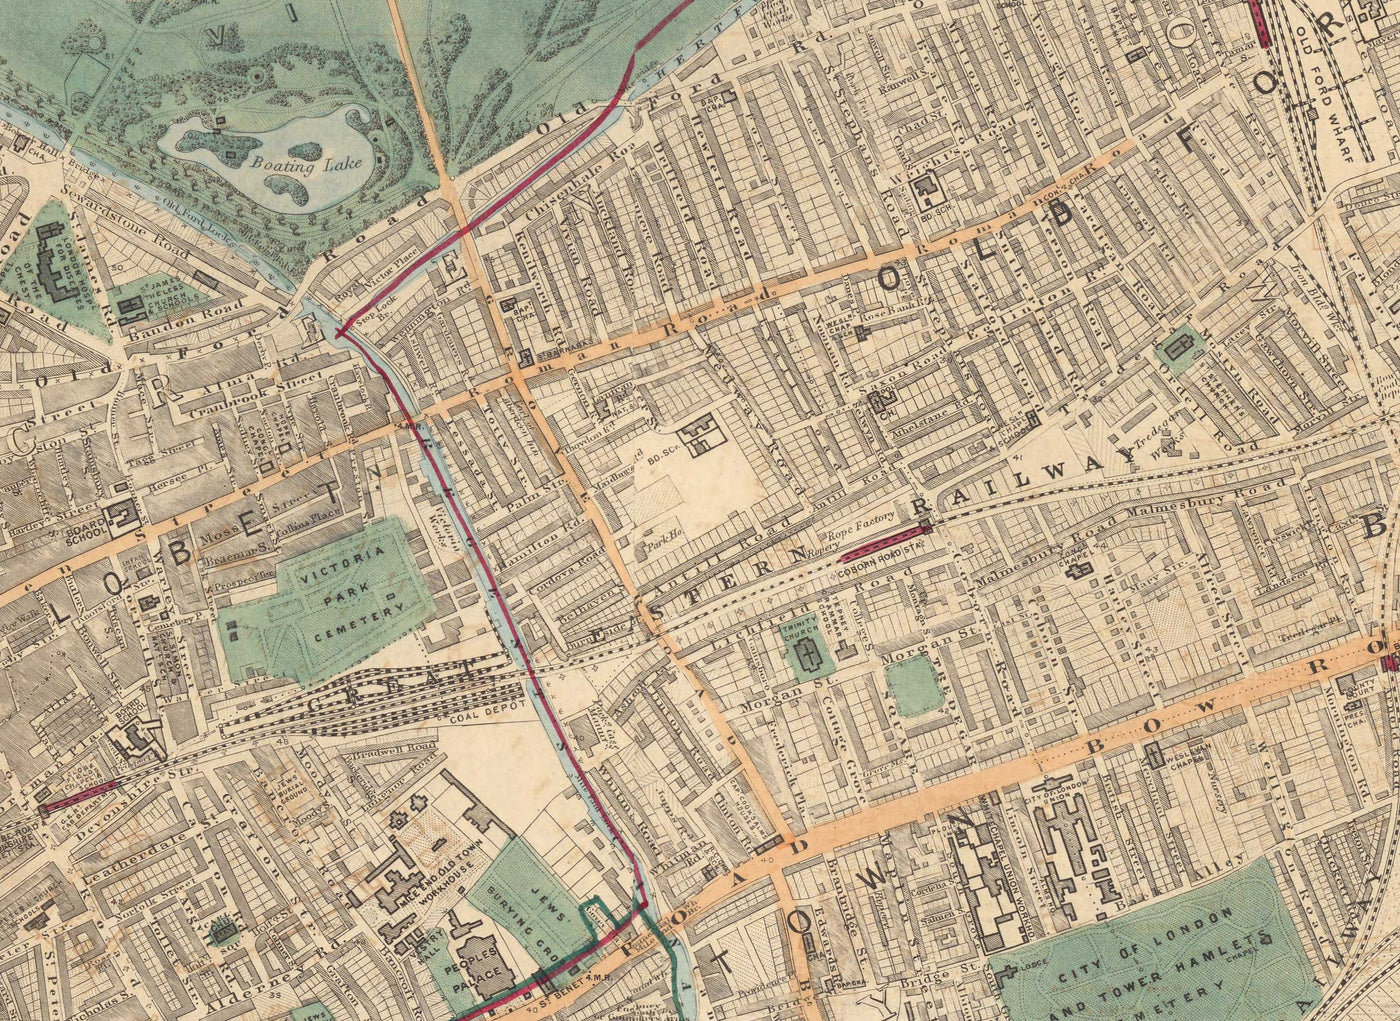 Antiguo mapa en color del este de Londres en 1891 - Victoria Park, Hackney, Bow, Stratford, Tower Hamlets - E9, E20, E3, E15